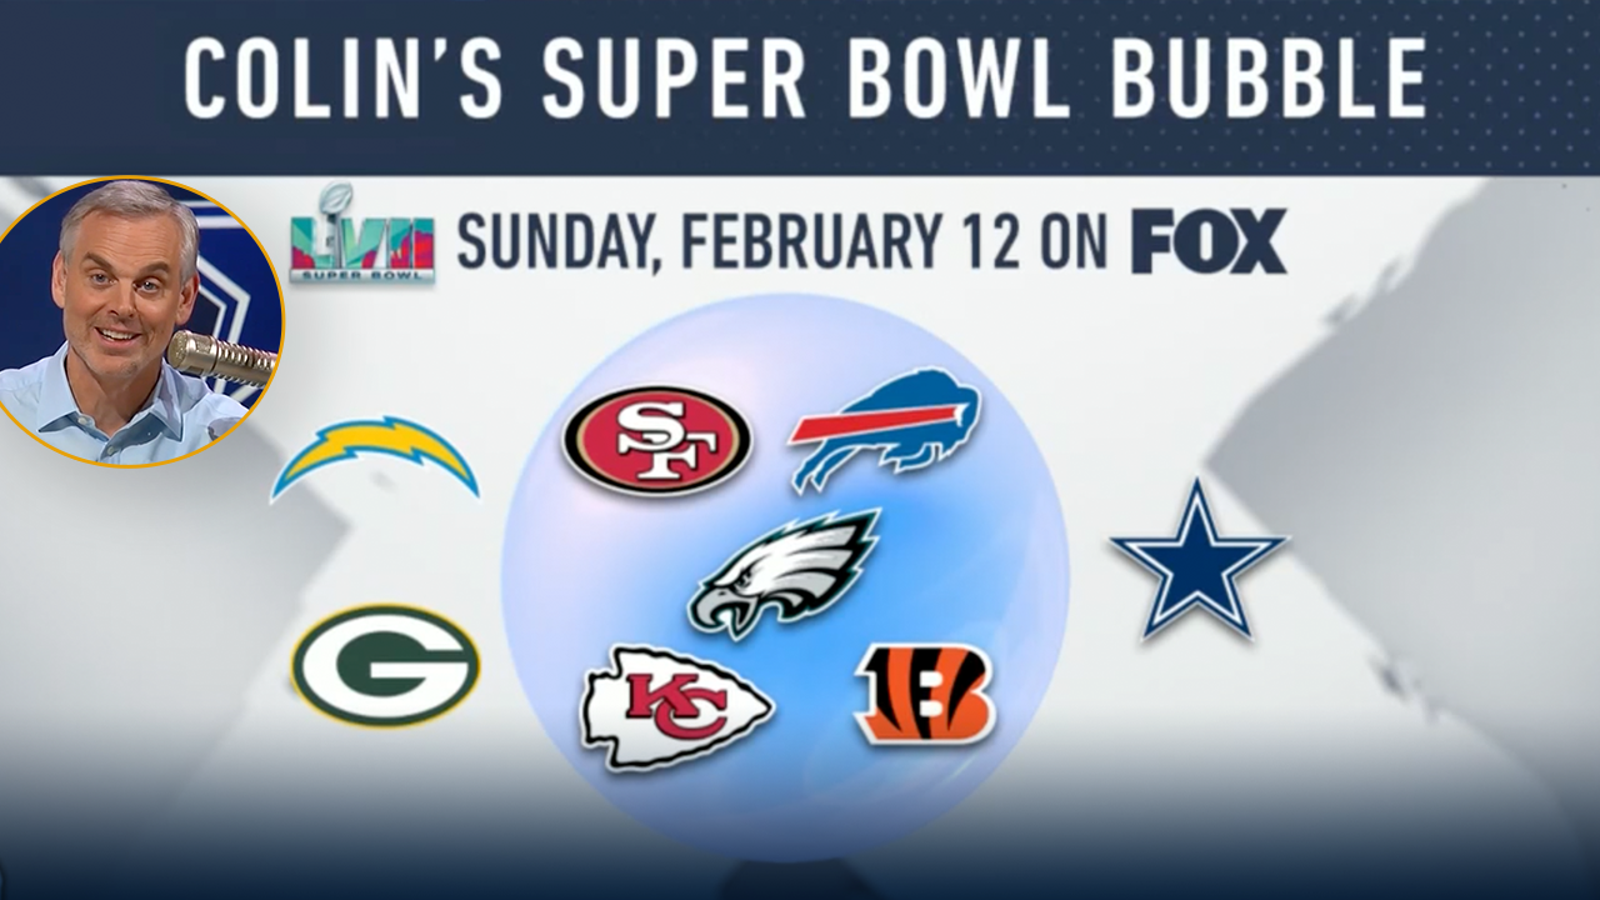 Where do the Dallas Cowboys fall on Colin's Super Bowl bubble? 